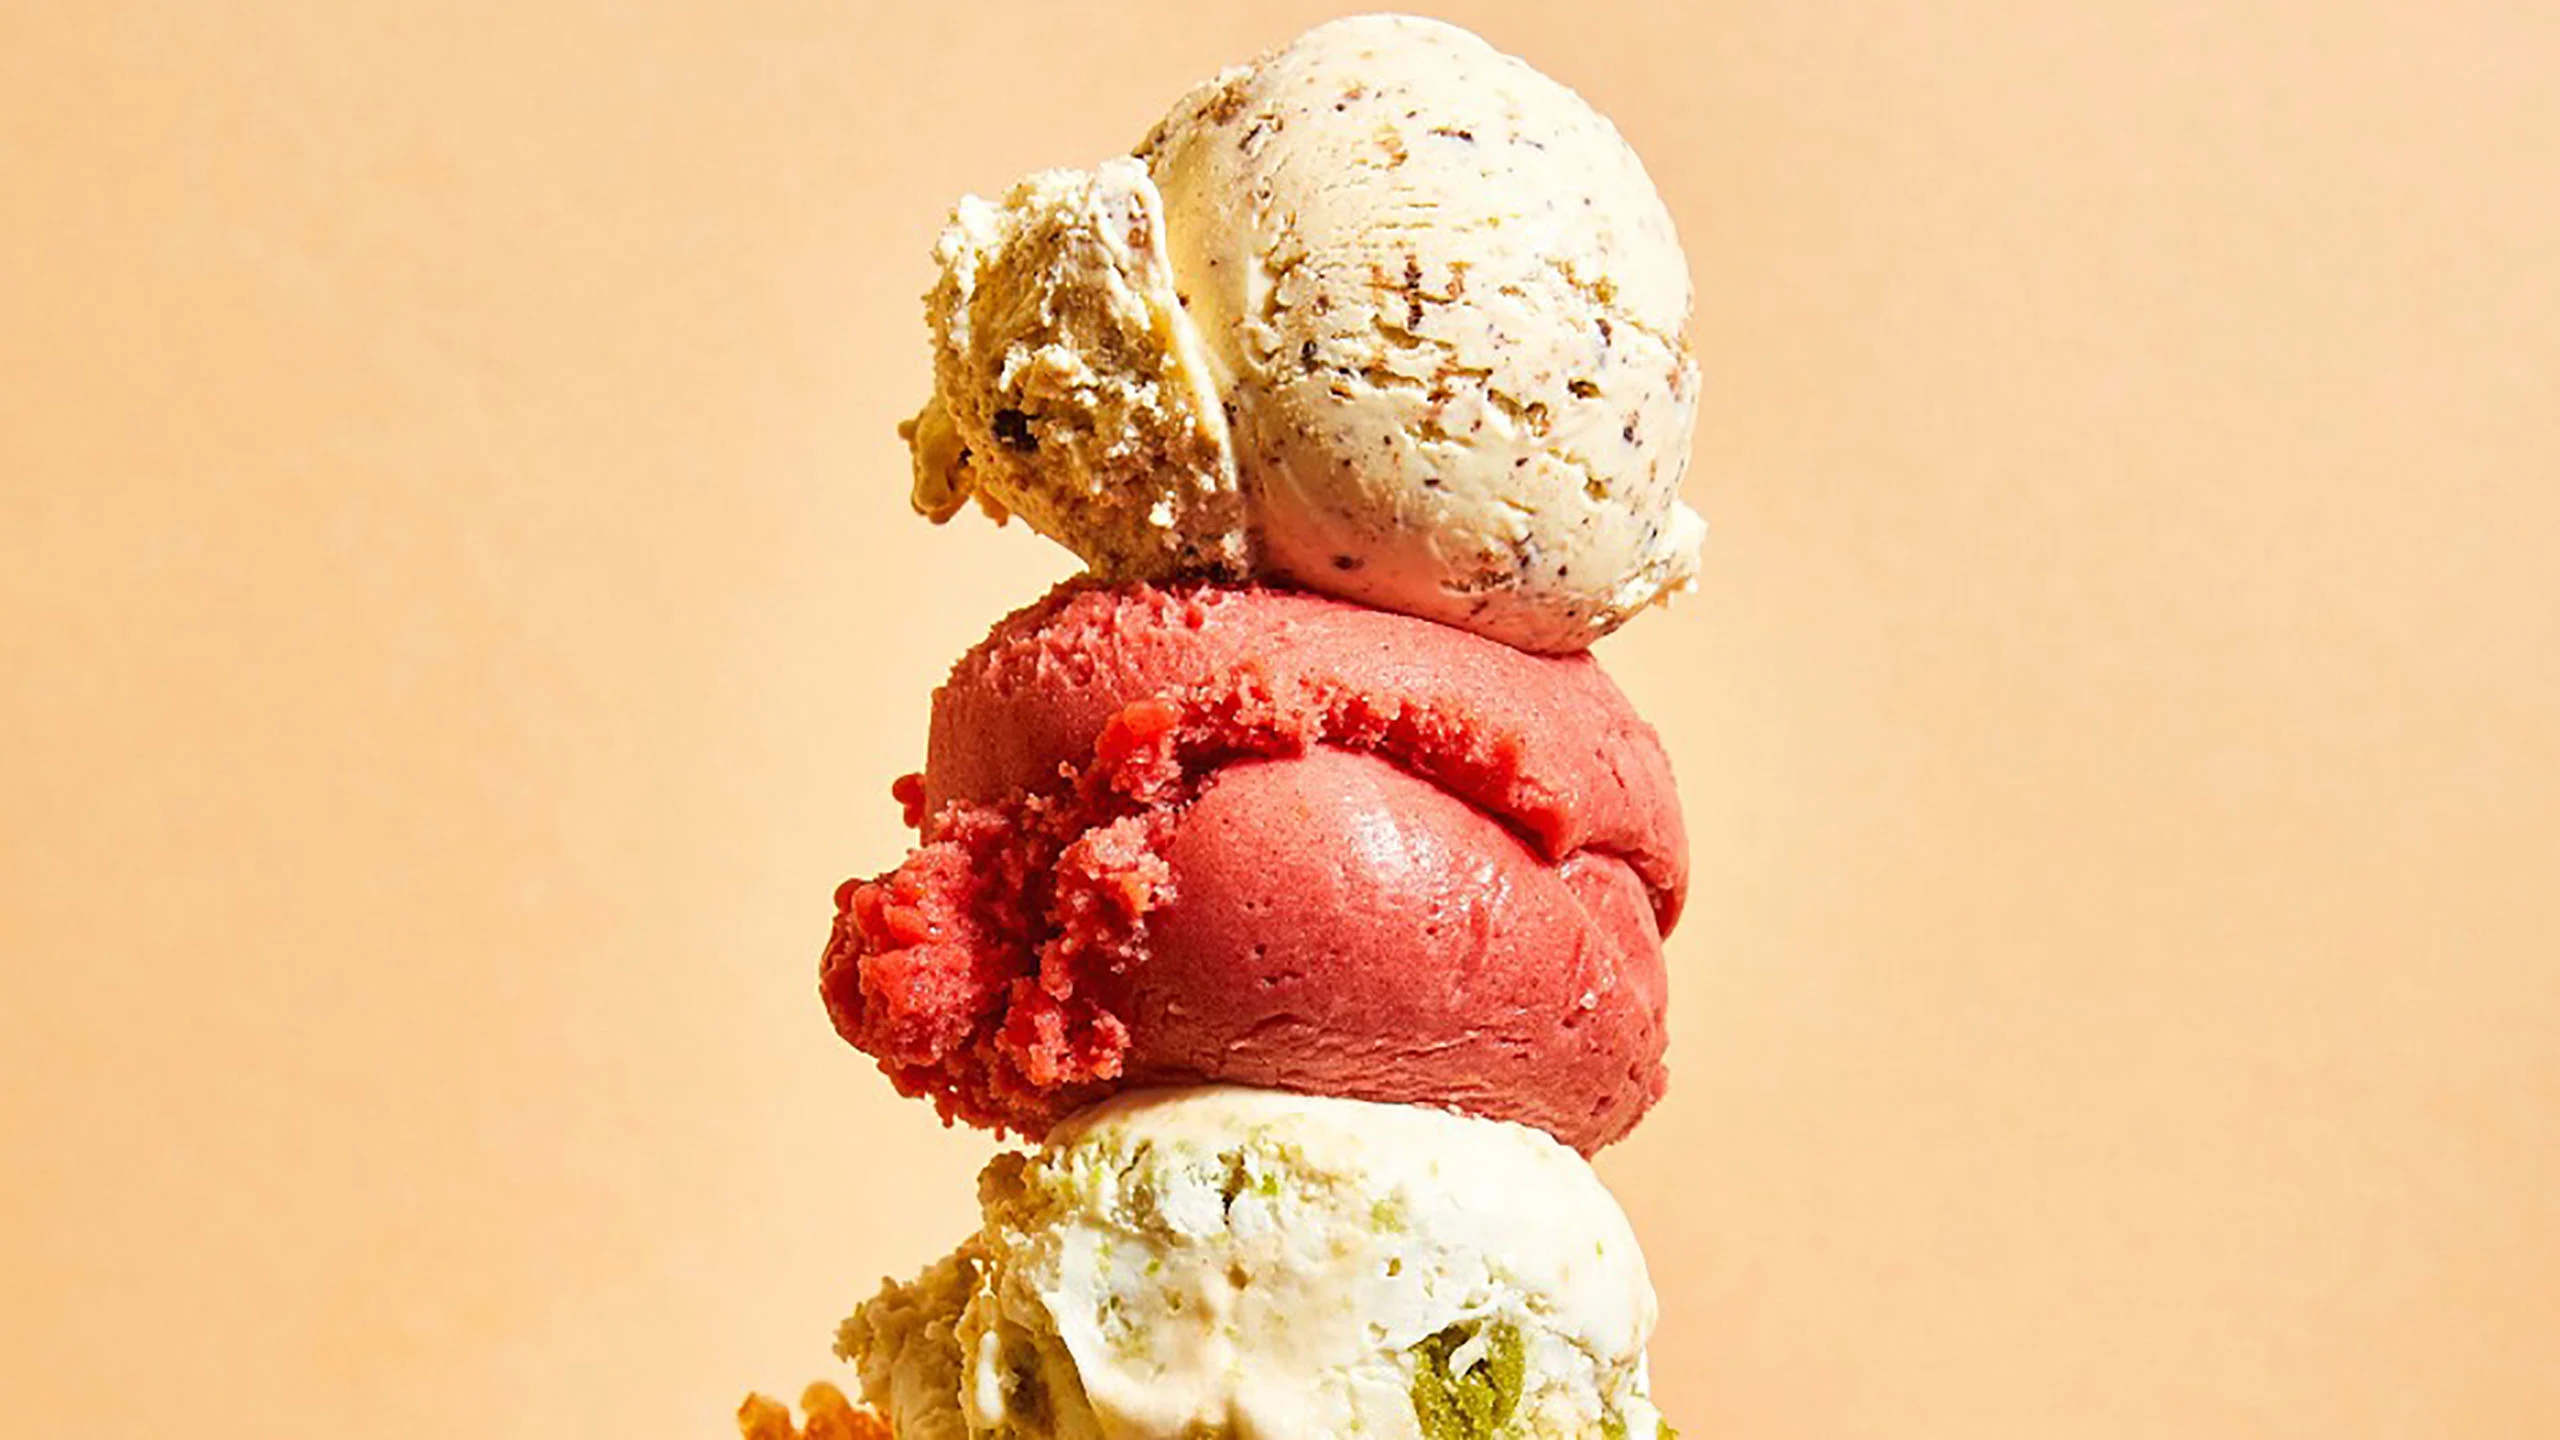 Las pintas de helado son la medida perfecta para disfrutar en todos lados